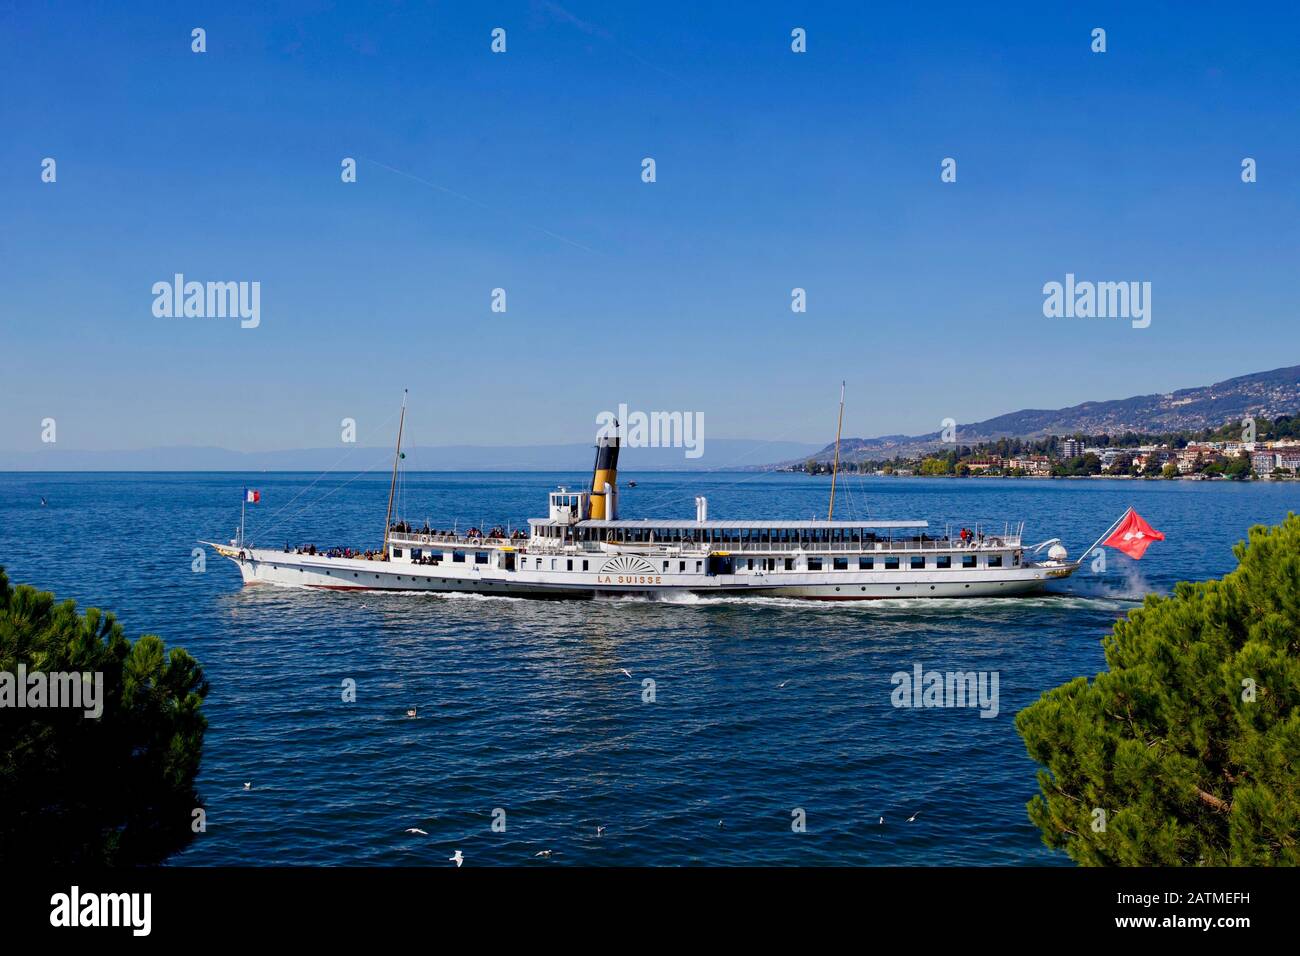 Dampfer "La Suisse", Genfersee, Montreux, Kanton Waadt, Schweiz  Stockfotografie - Alamy